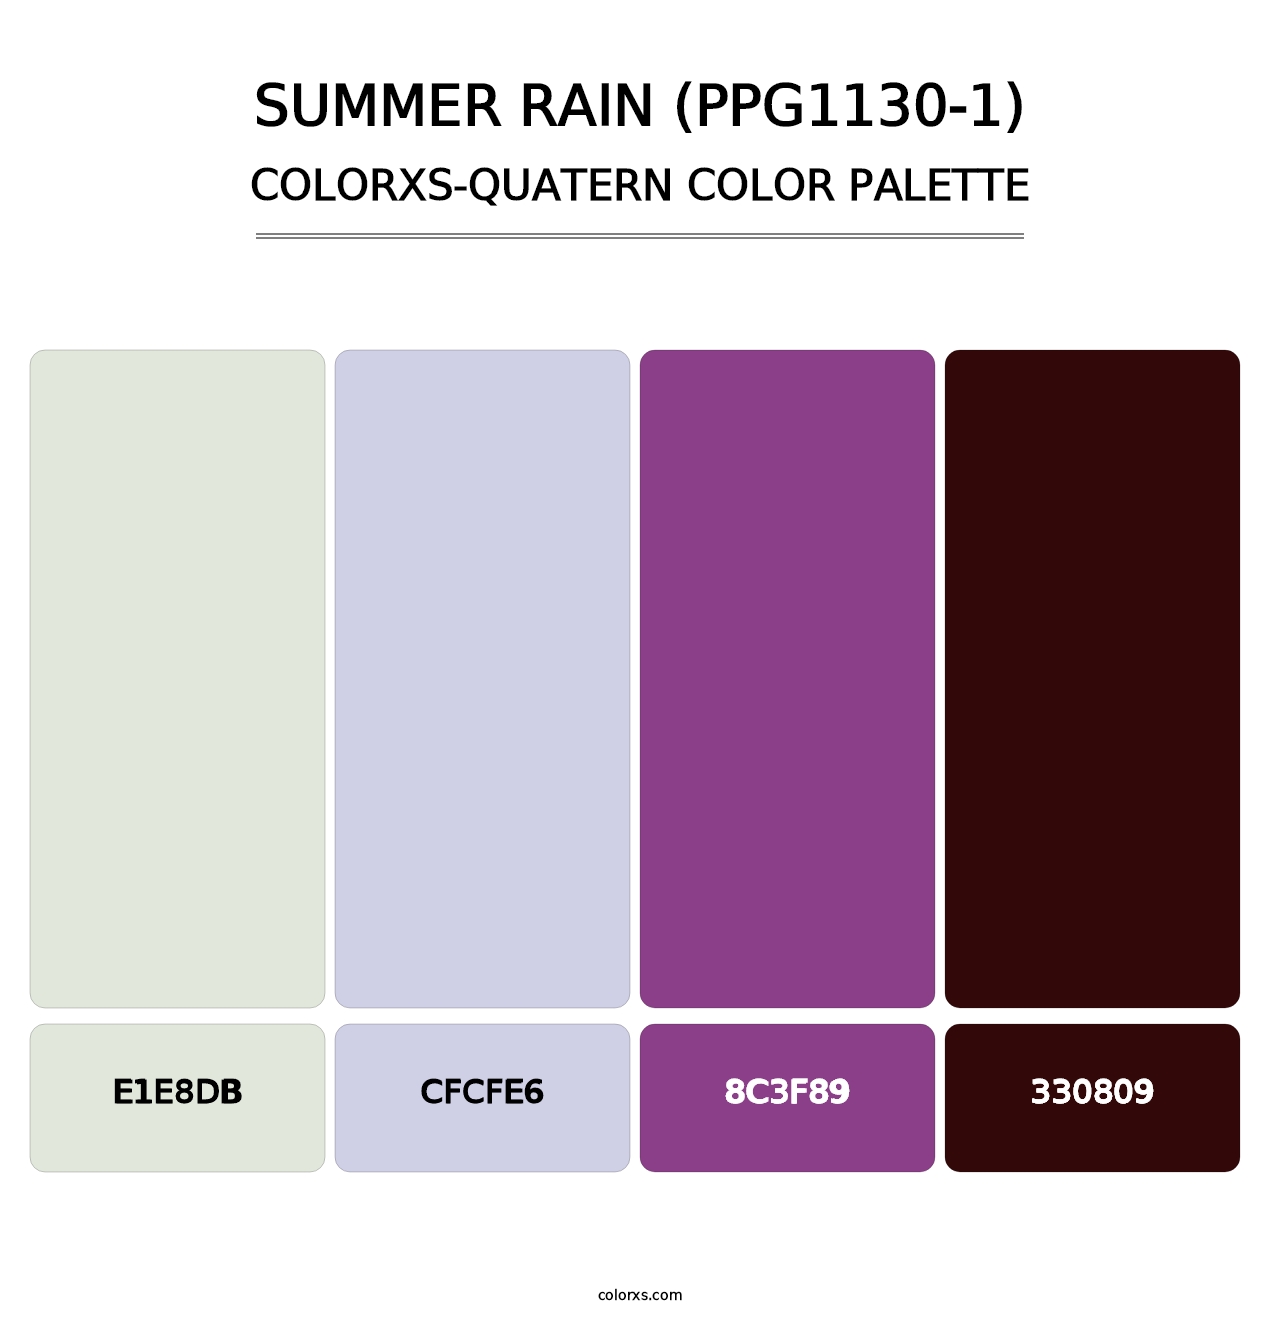 Summer Rain (PPG1130-1) - Colorxs Quatern Palette